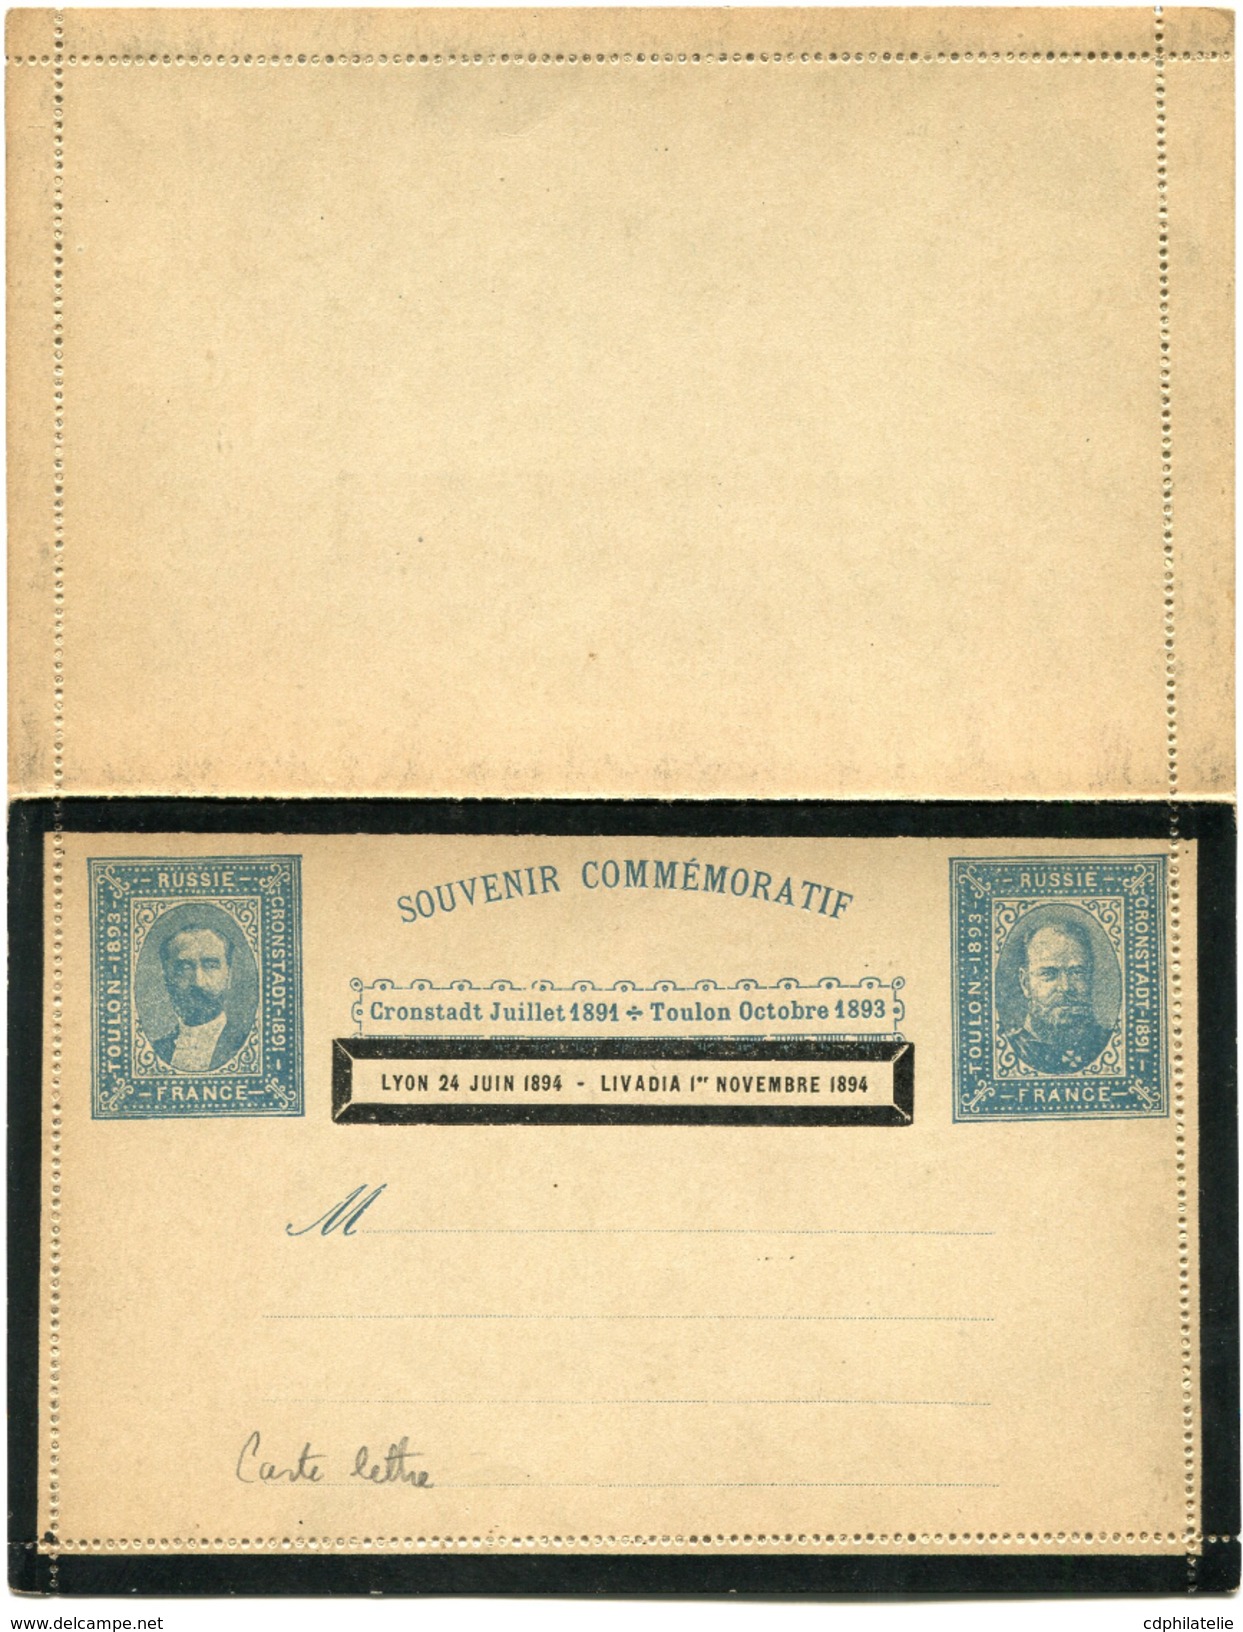 FRANCE CARTE-LETTRE SOUVENIR COMMEMORATIF FRANCE / RUSSIE CRONSTADT JUILLET 1891 / TOULON OCTOBRE 1893 / LYON 24 JUIN... - Private Stationery